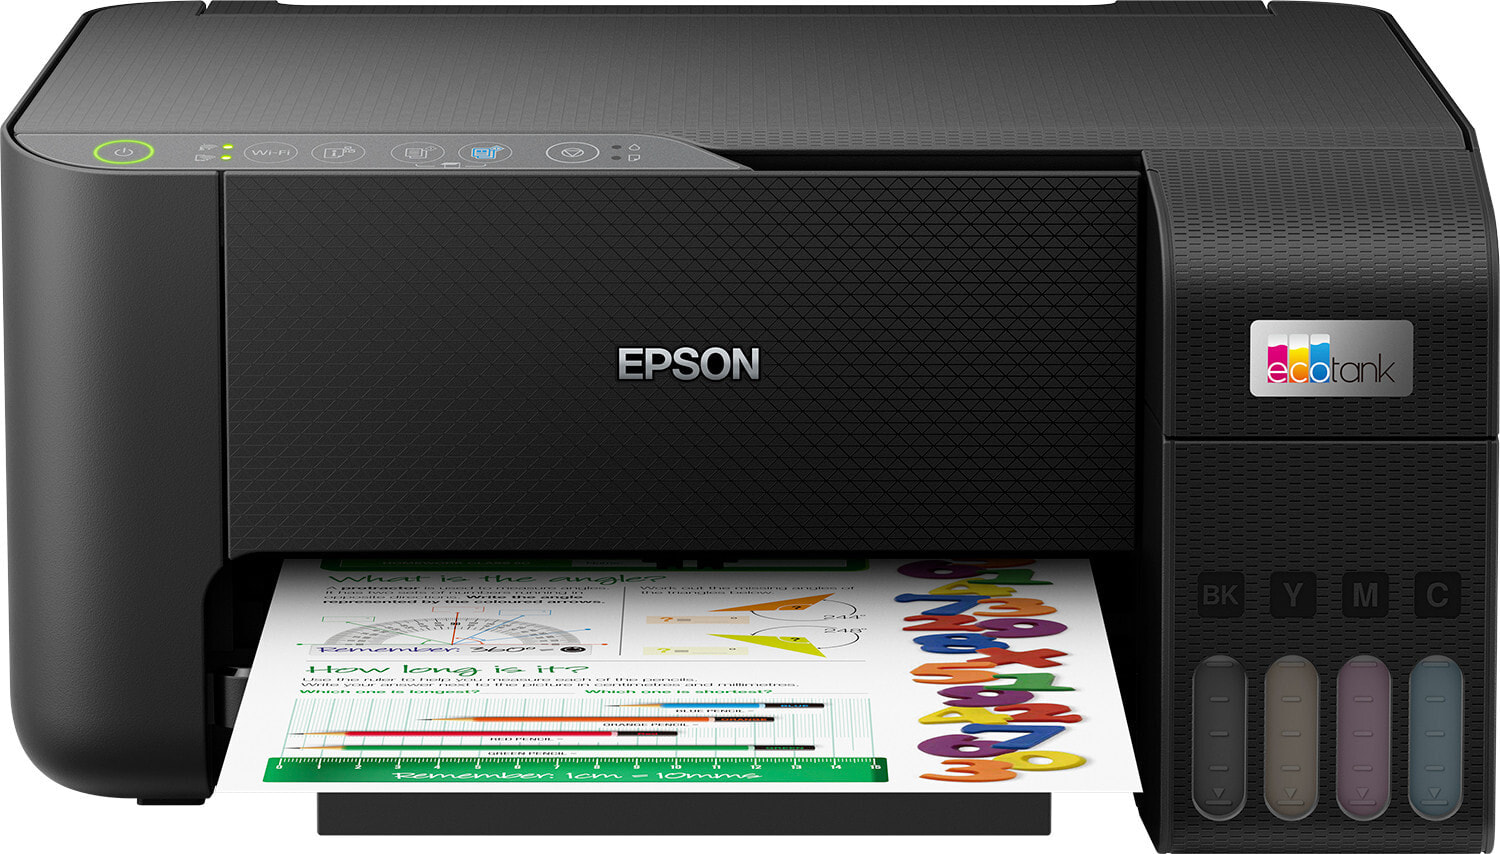 Epson EcoTank C11CJ67416 многофункциональное устройство (МФУ) Струйная A4 5760 x 1440 DPI 33 ppm Wi-Fi